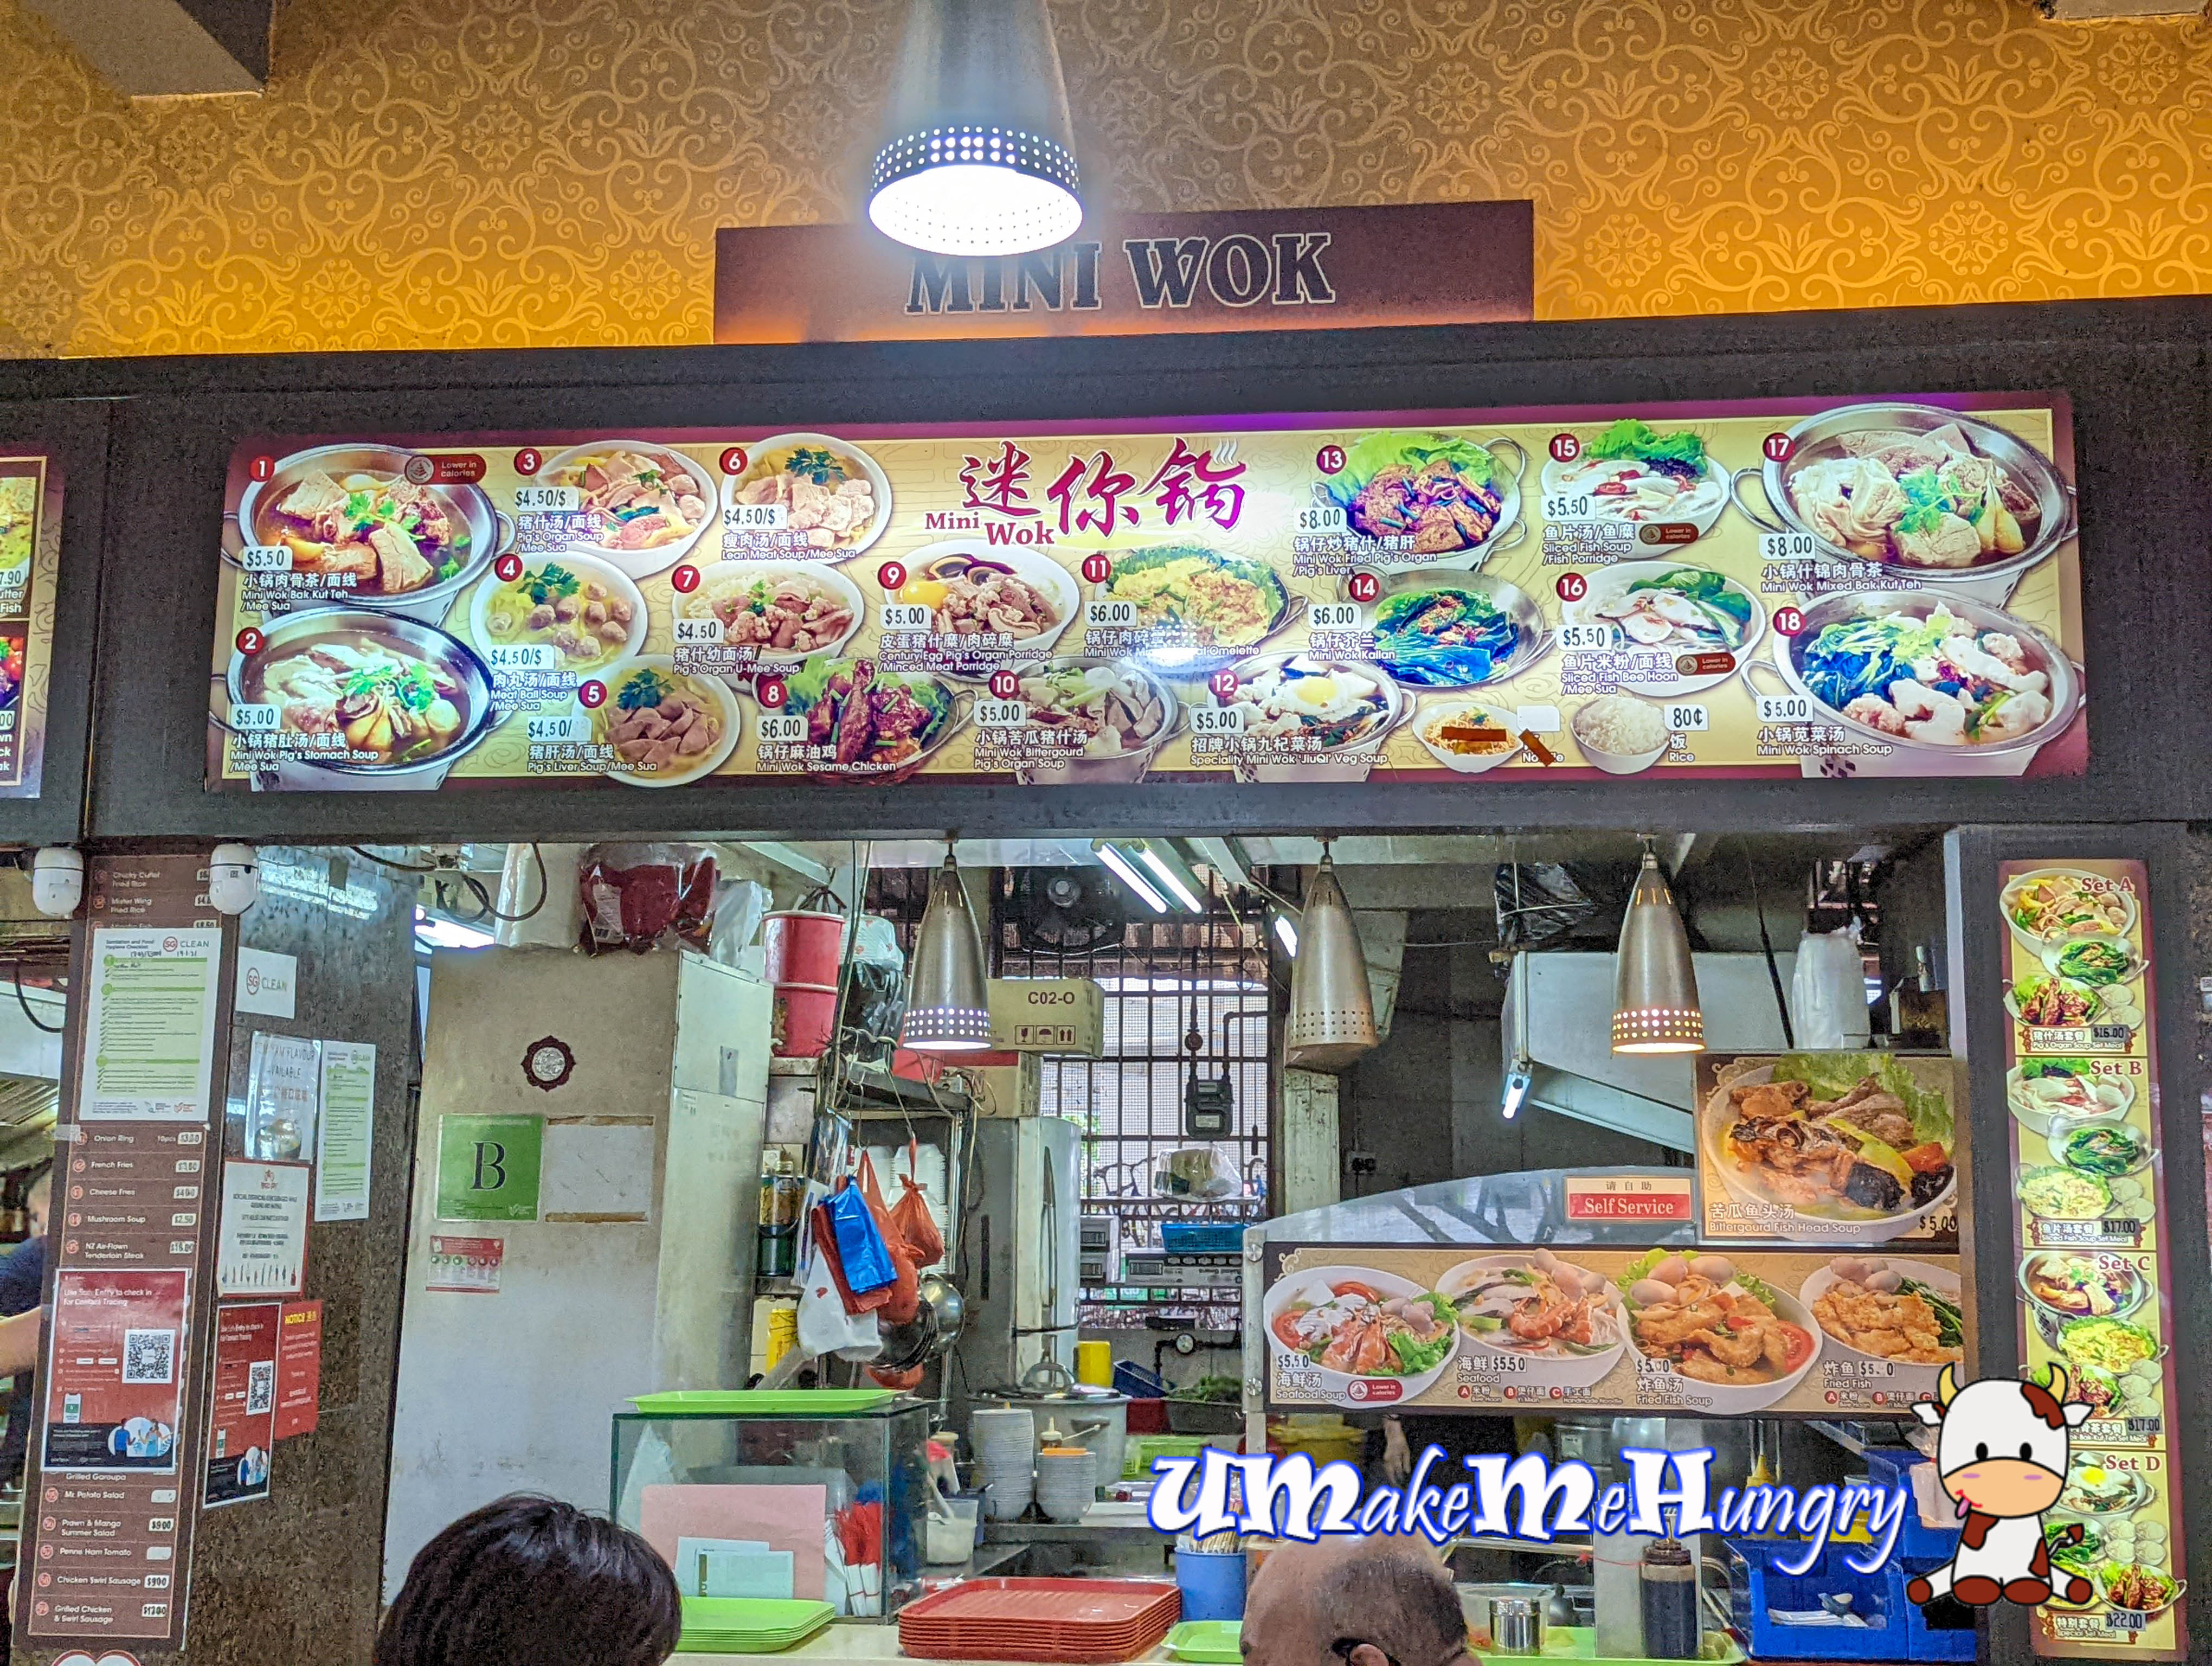 Mini Wok (Fairprice Hub)  Burpple - 2 Reviews - Boon Lay, Singapore